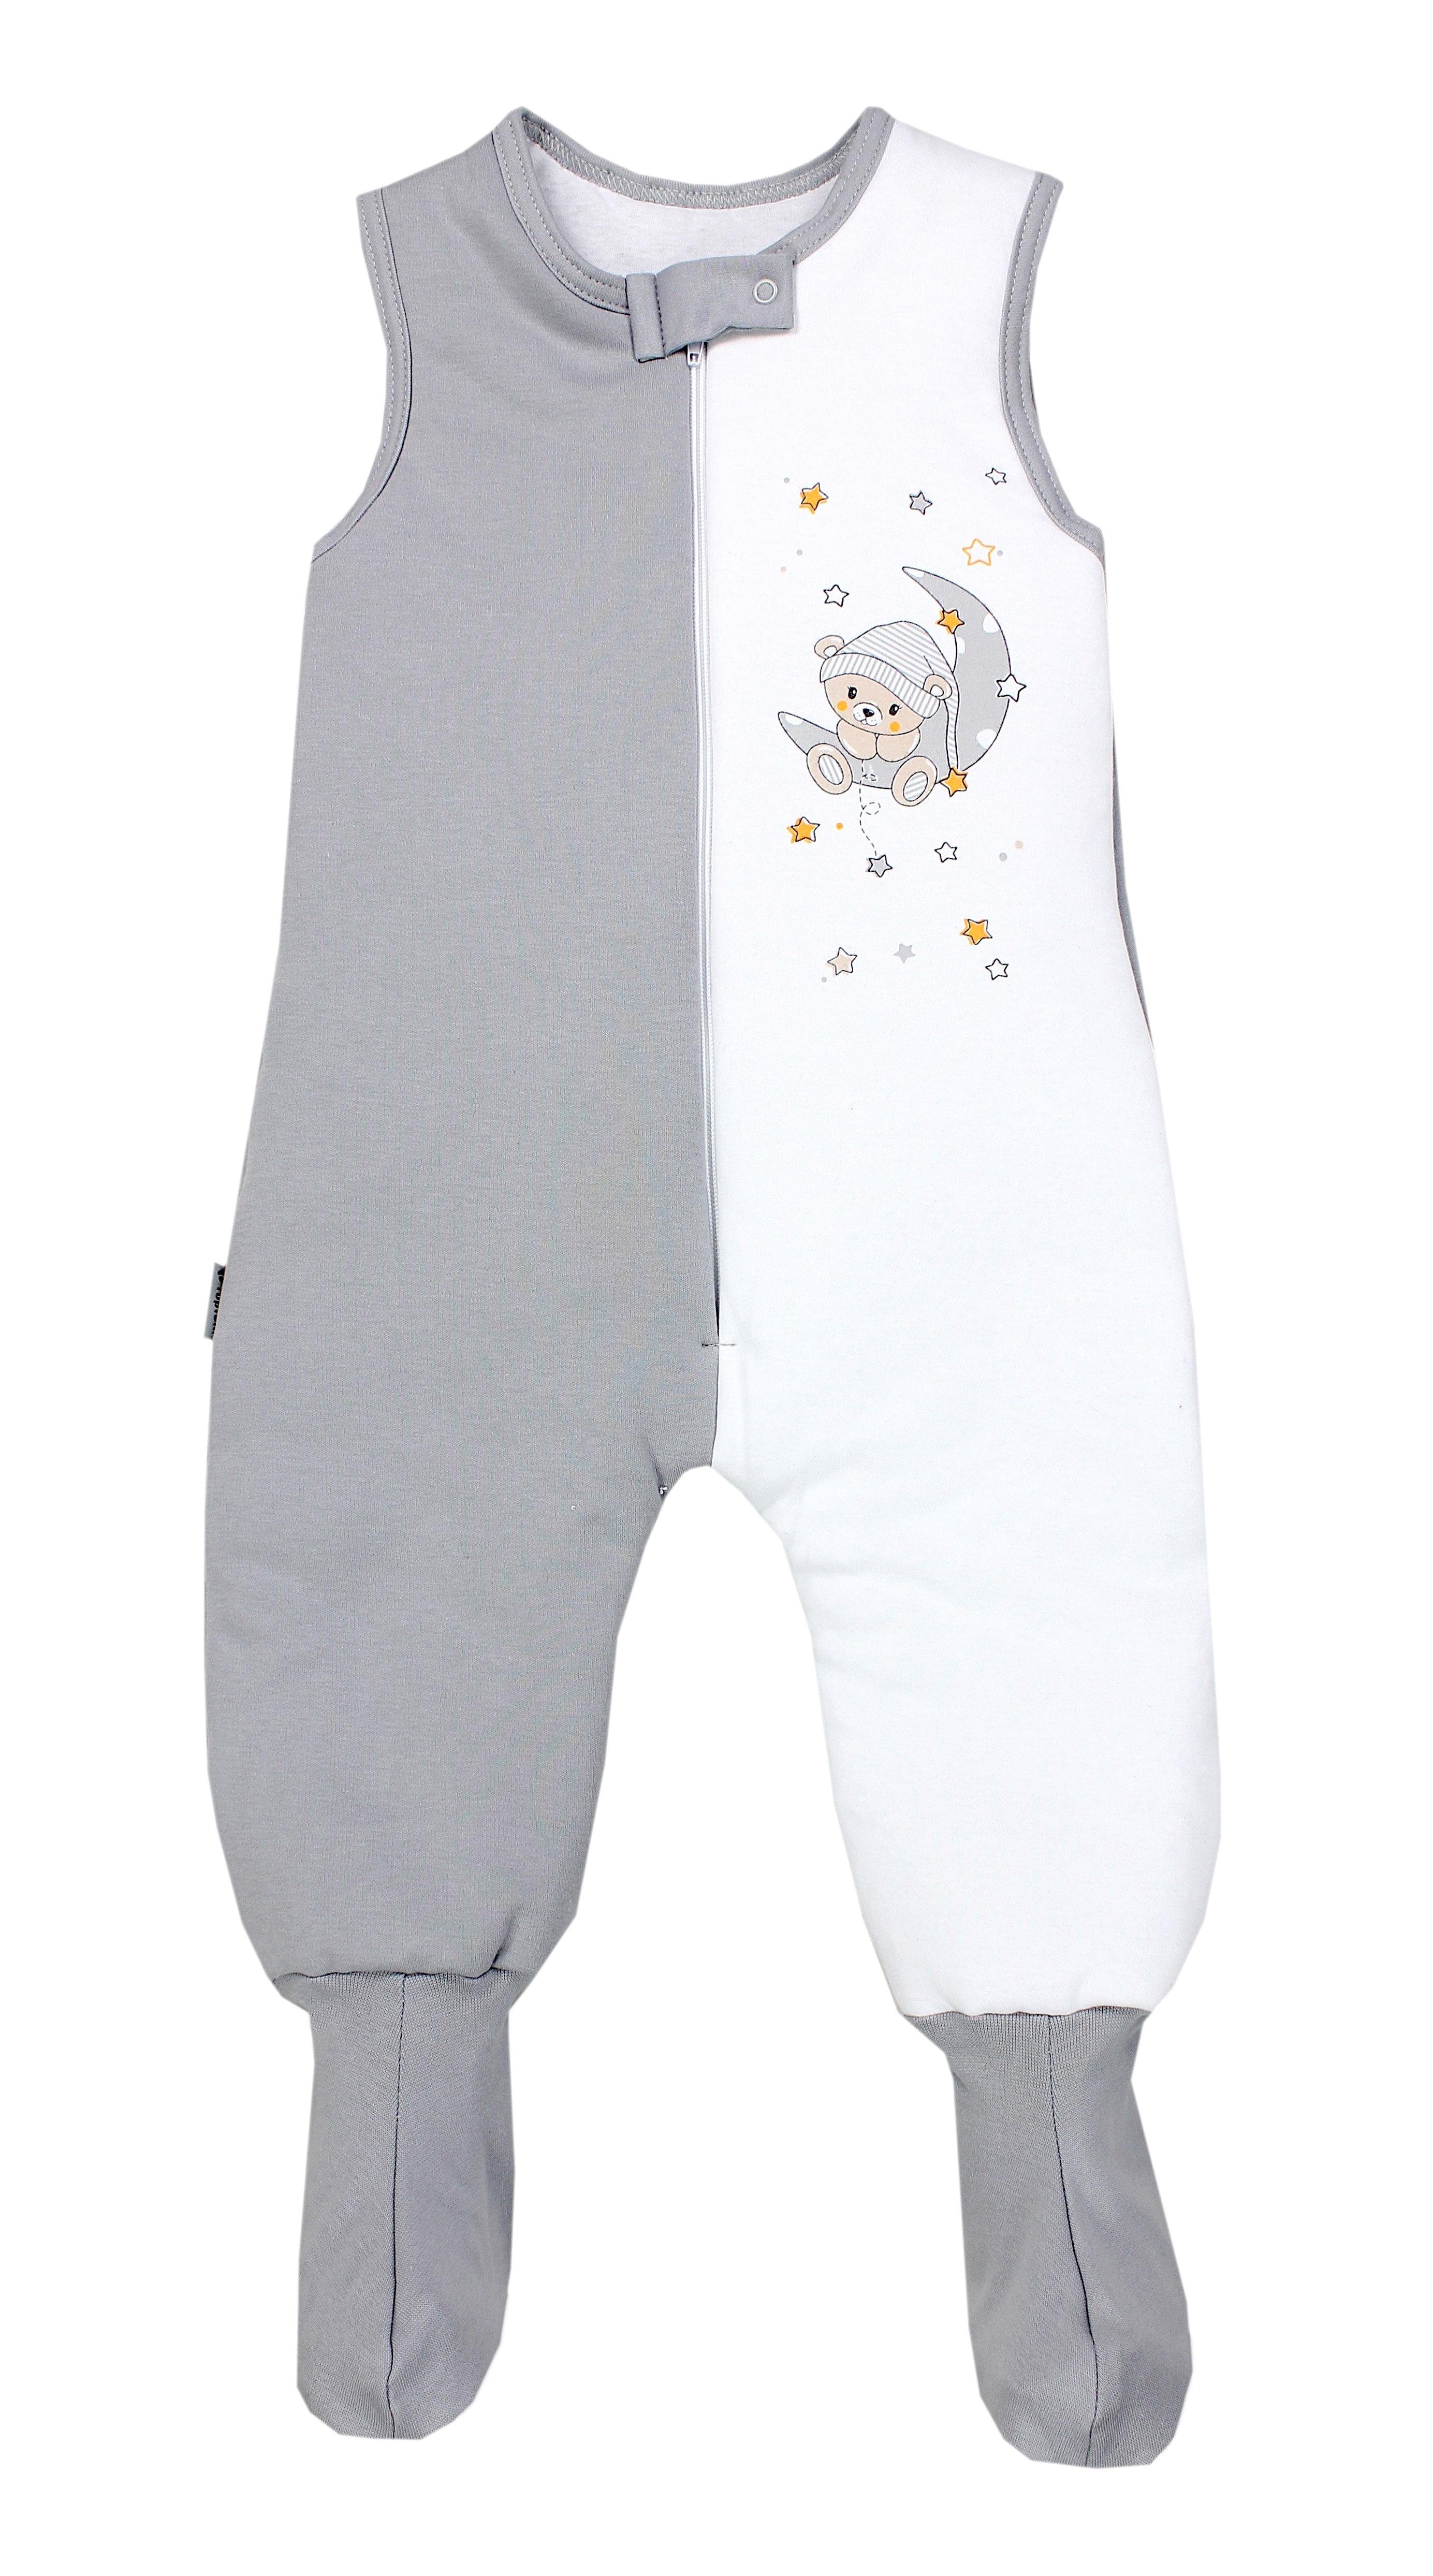 TupTam Babyschlafsack Winterschlafsack mit Beinen und Füßen OEKO-TEX zertifiziert, 2.5 TOG Bär auf Mond / Grau